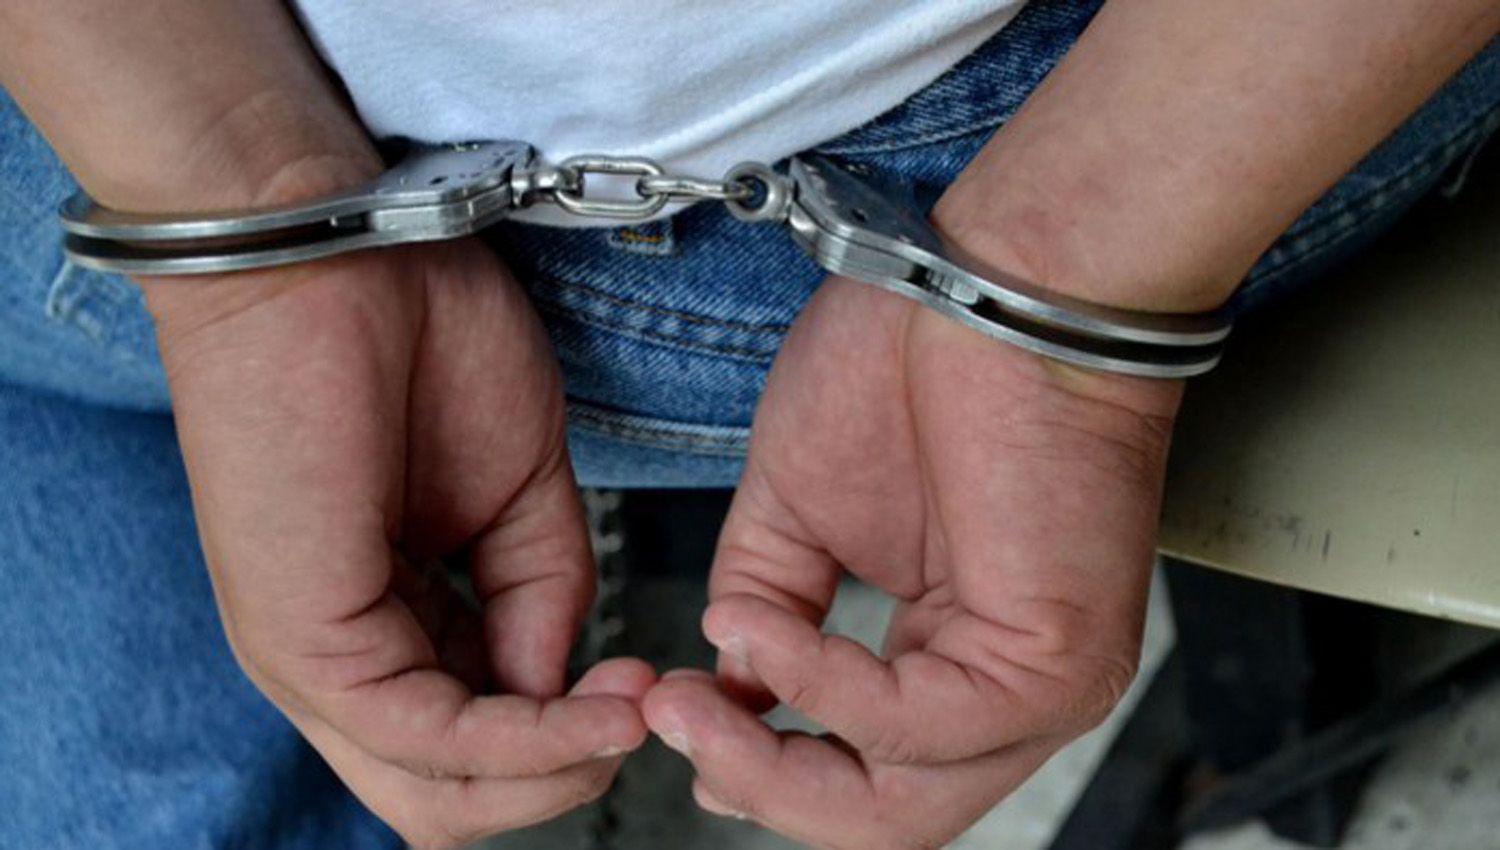 Friacuteas- Confirmaron prisioacuten preventiva por abusar de sus cuatro sobrinas menores de edad